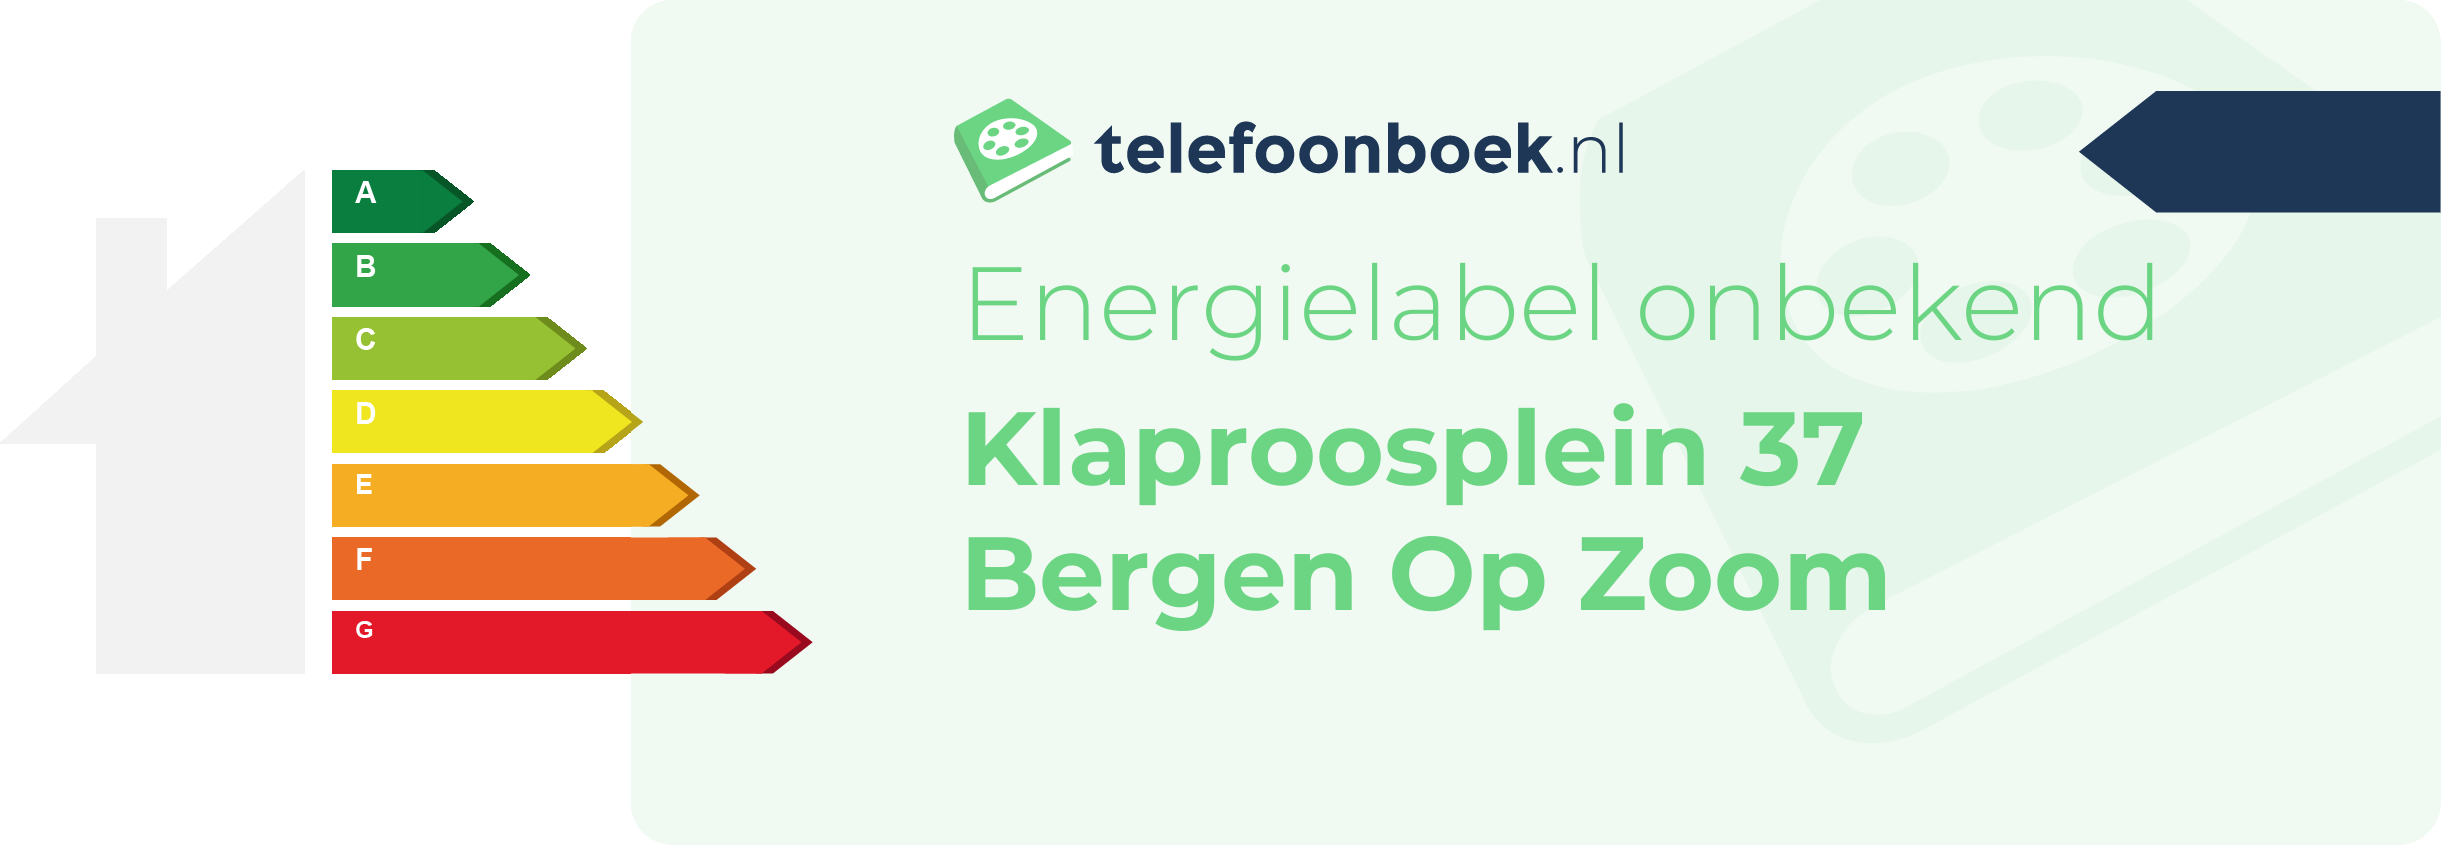 Energielabel Klaproosplein 37 Bergen Op Zoom